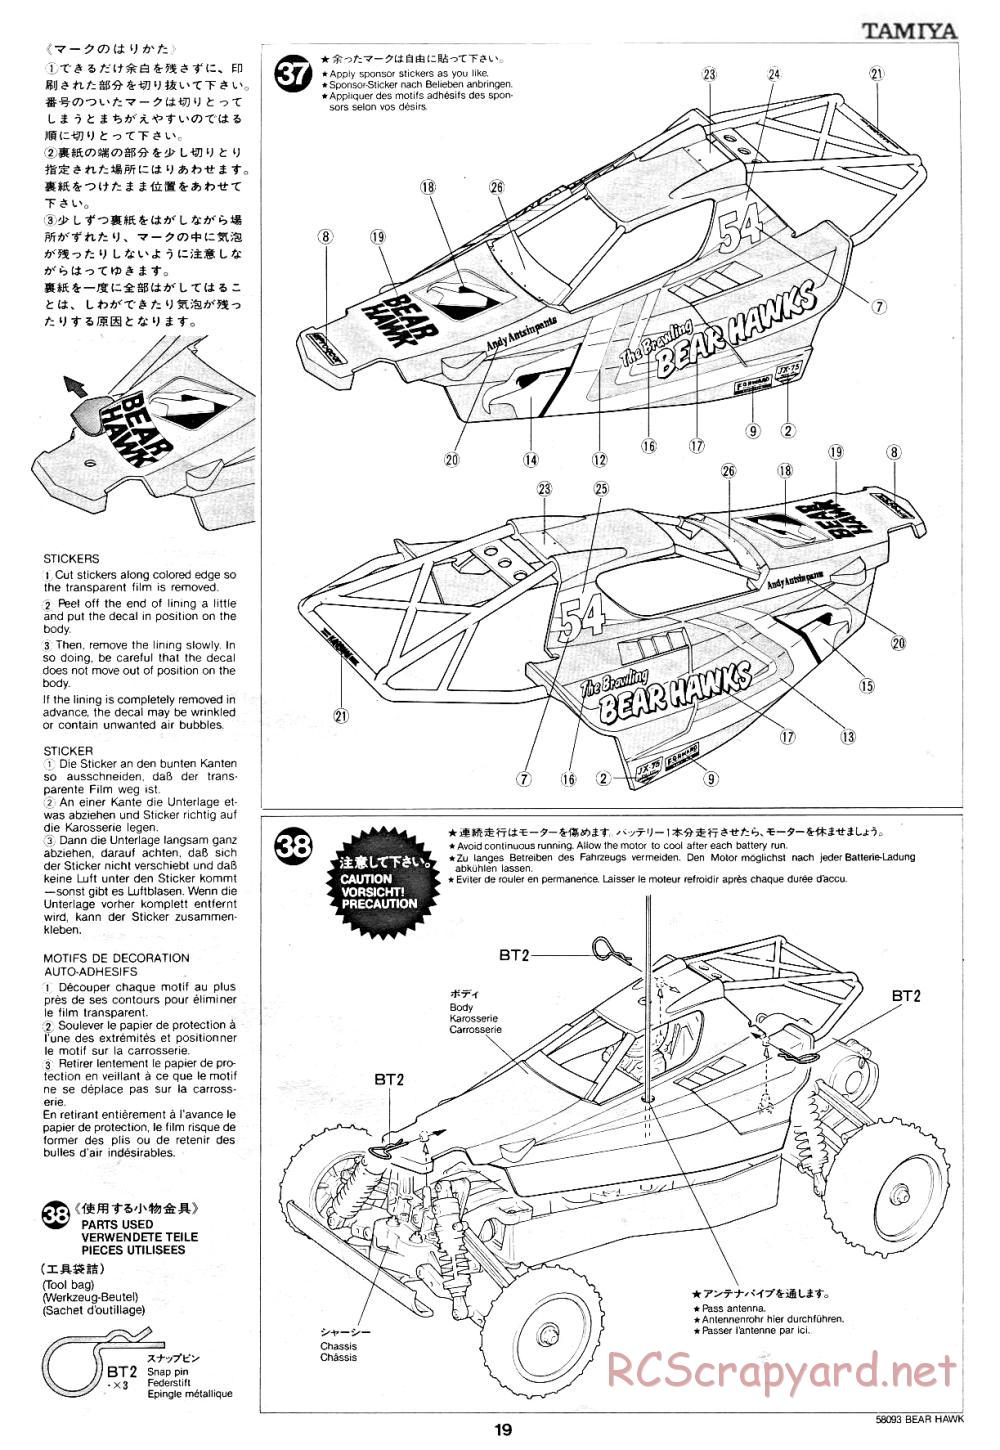 Tamiya - Bear Hawk - 58093 - Manual - Page 19